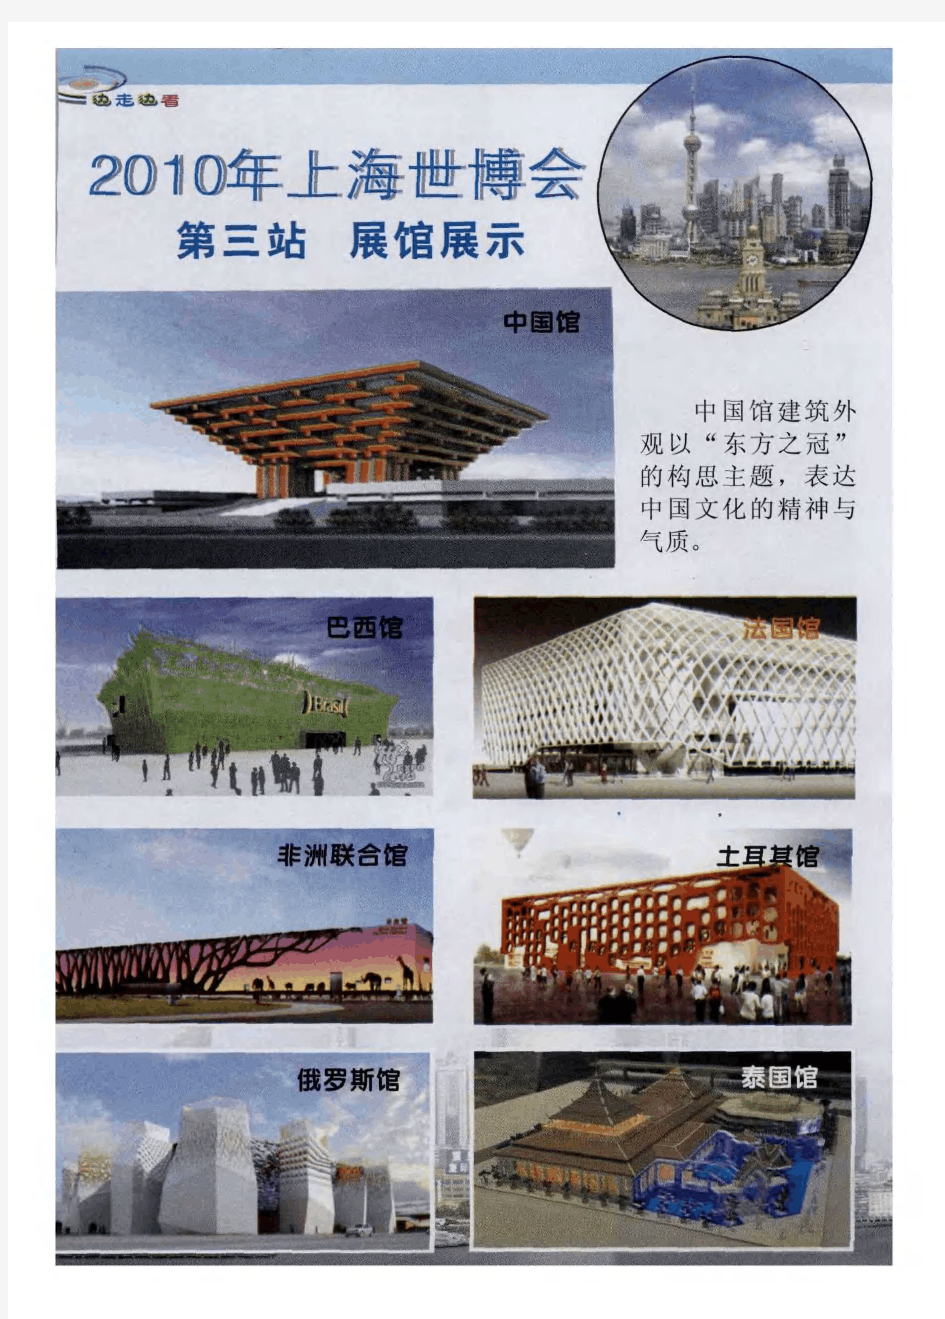 2010年上海世博会 第三站 展馆展示